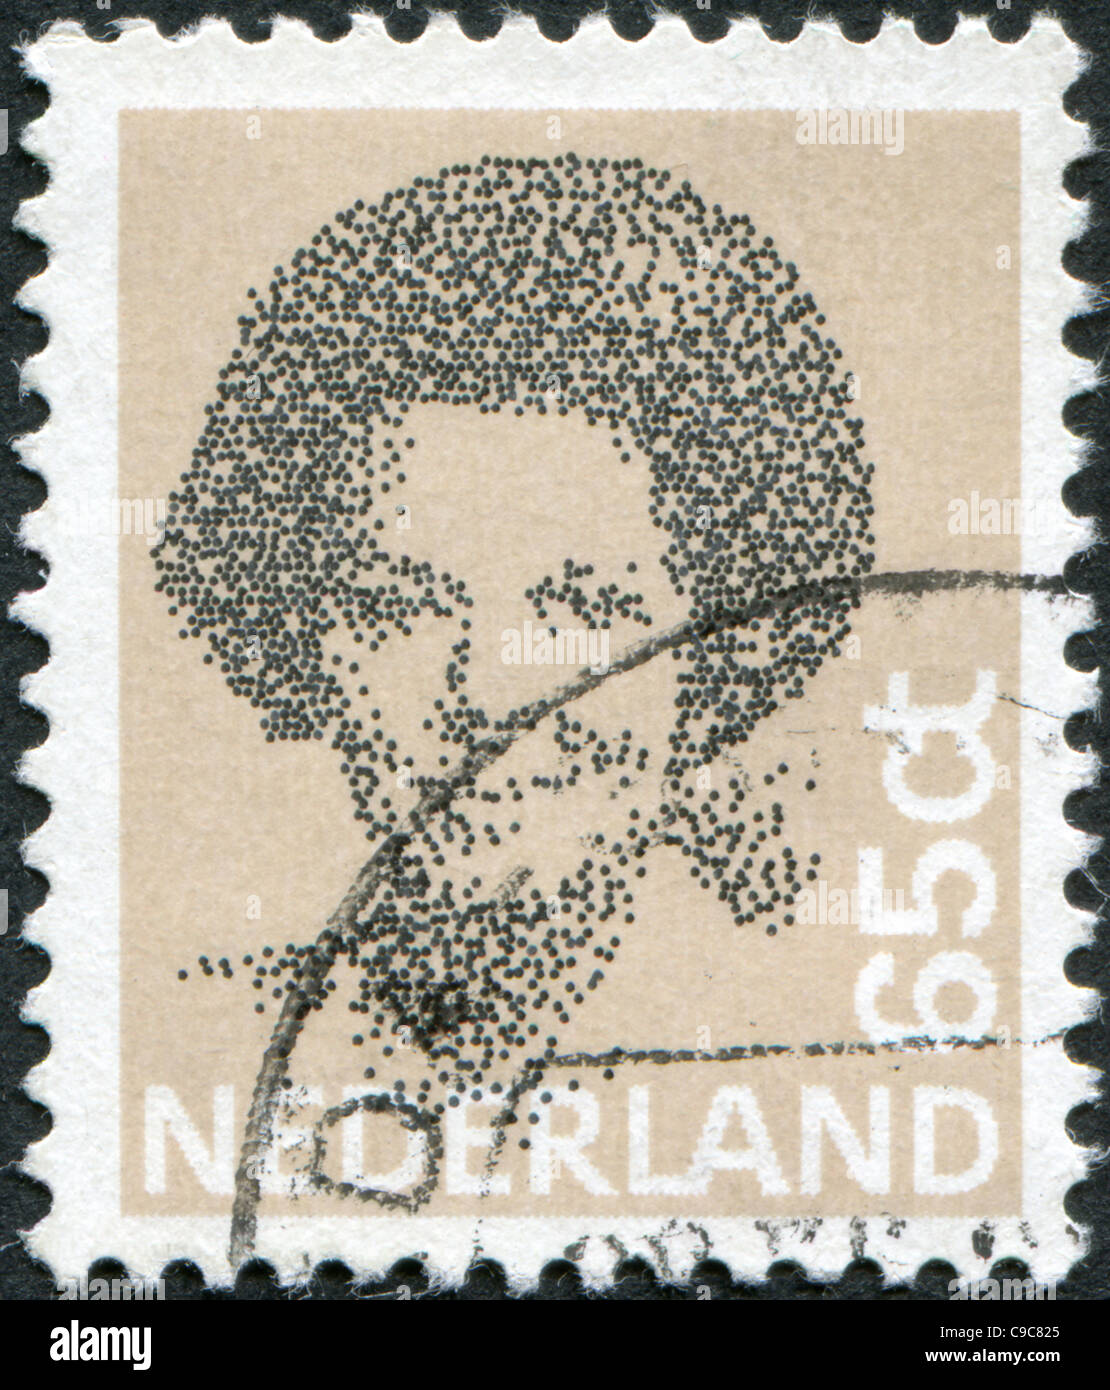 Pays-bas - 1981 : timbre imprimé aux Pays-Bas, indique Beatrix des Pays-Bas Banque D'Images